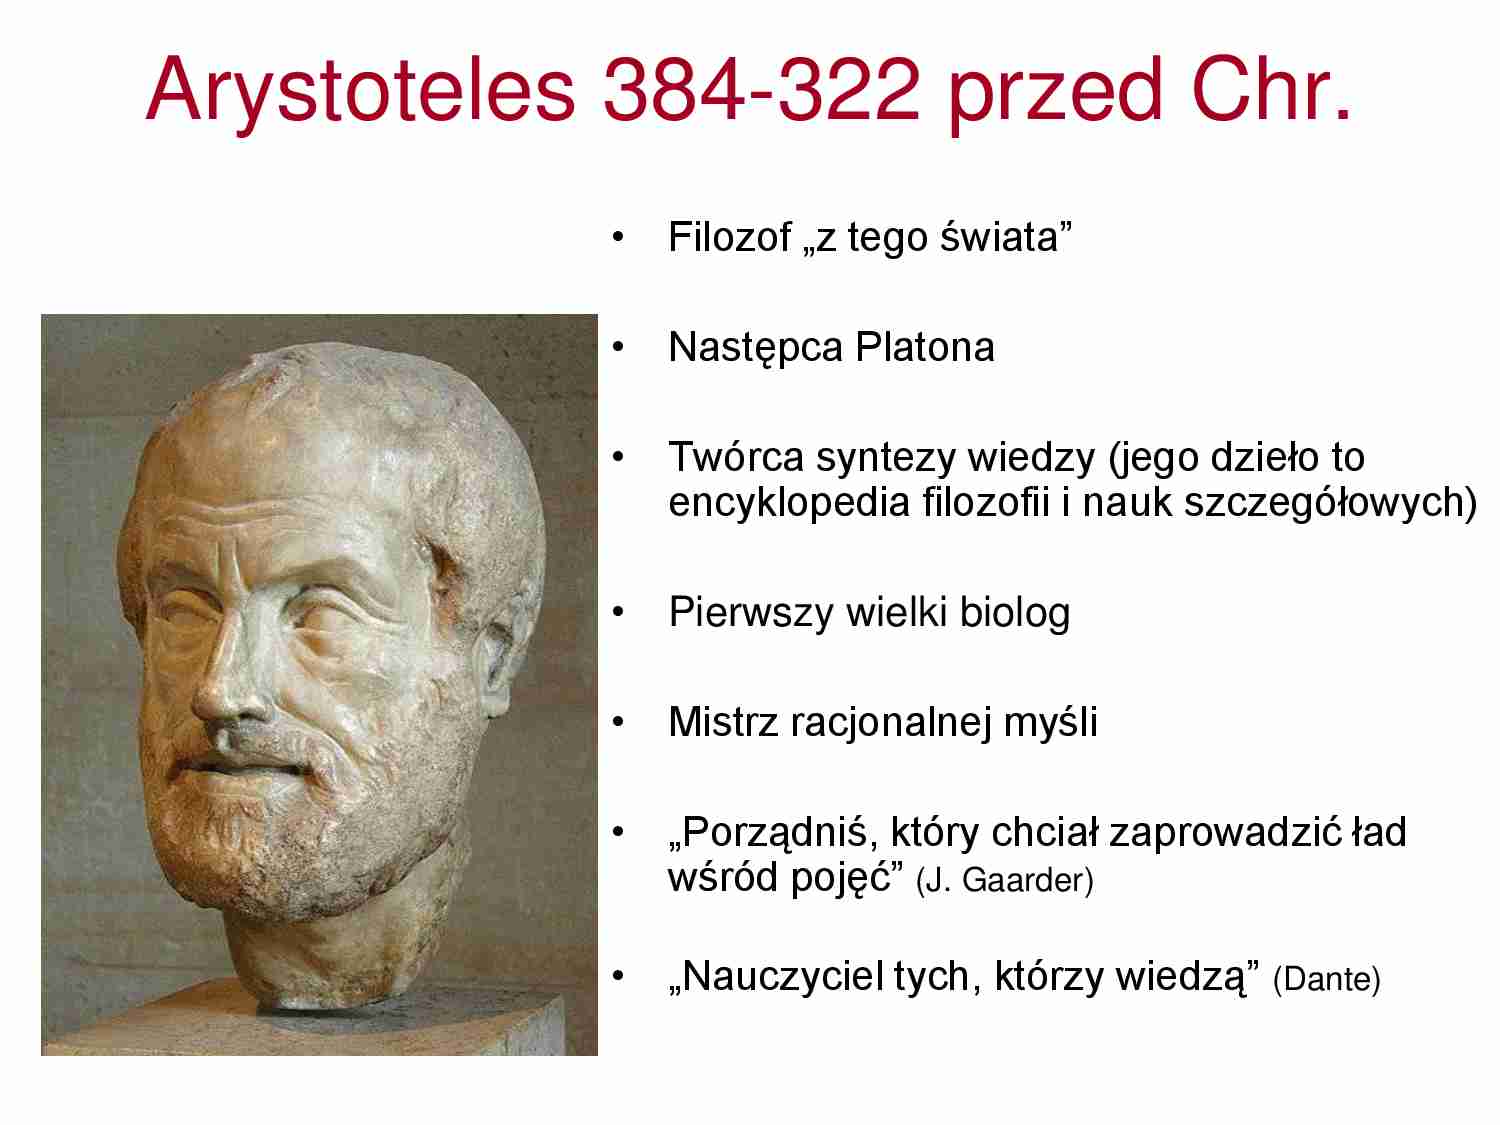 Arystoteles-opracowanie - filozof - strona 1